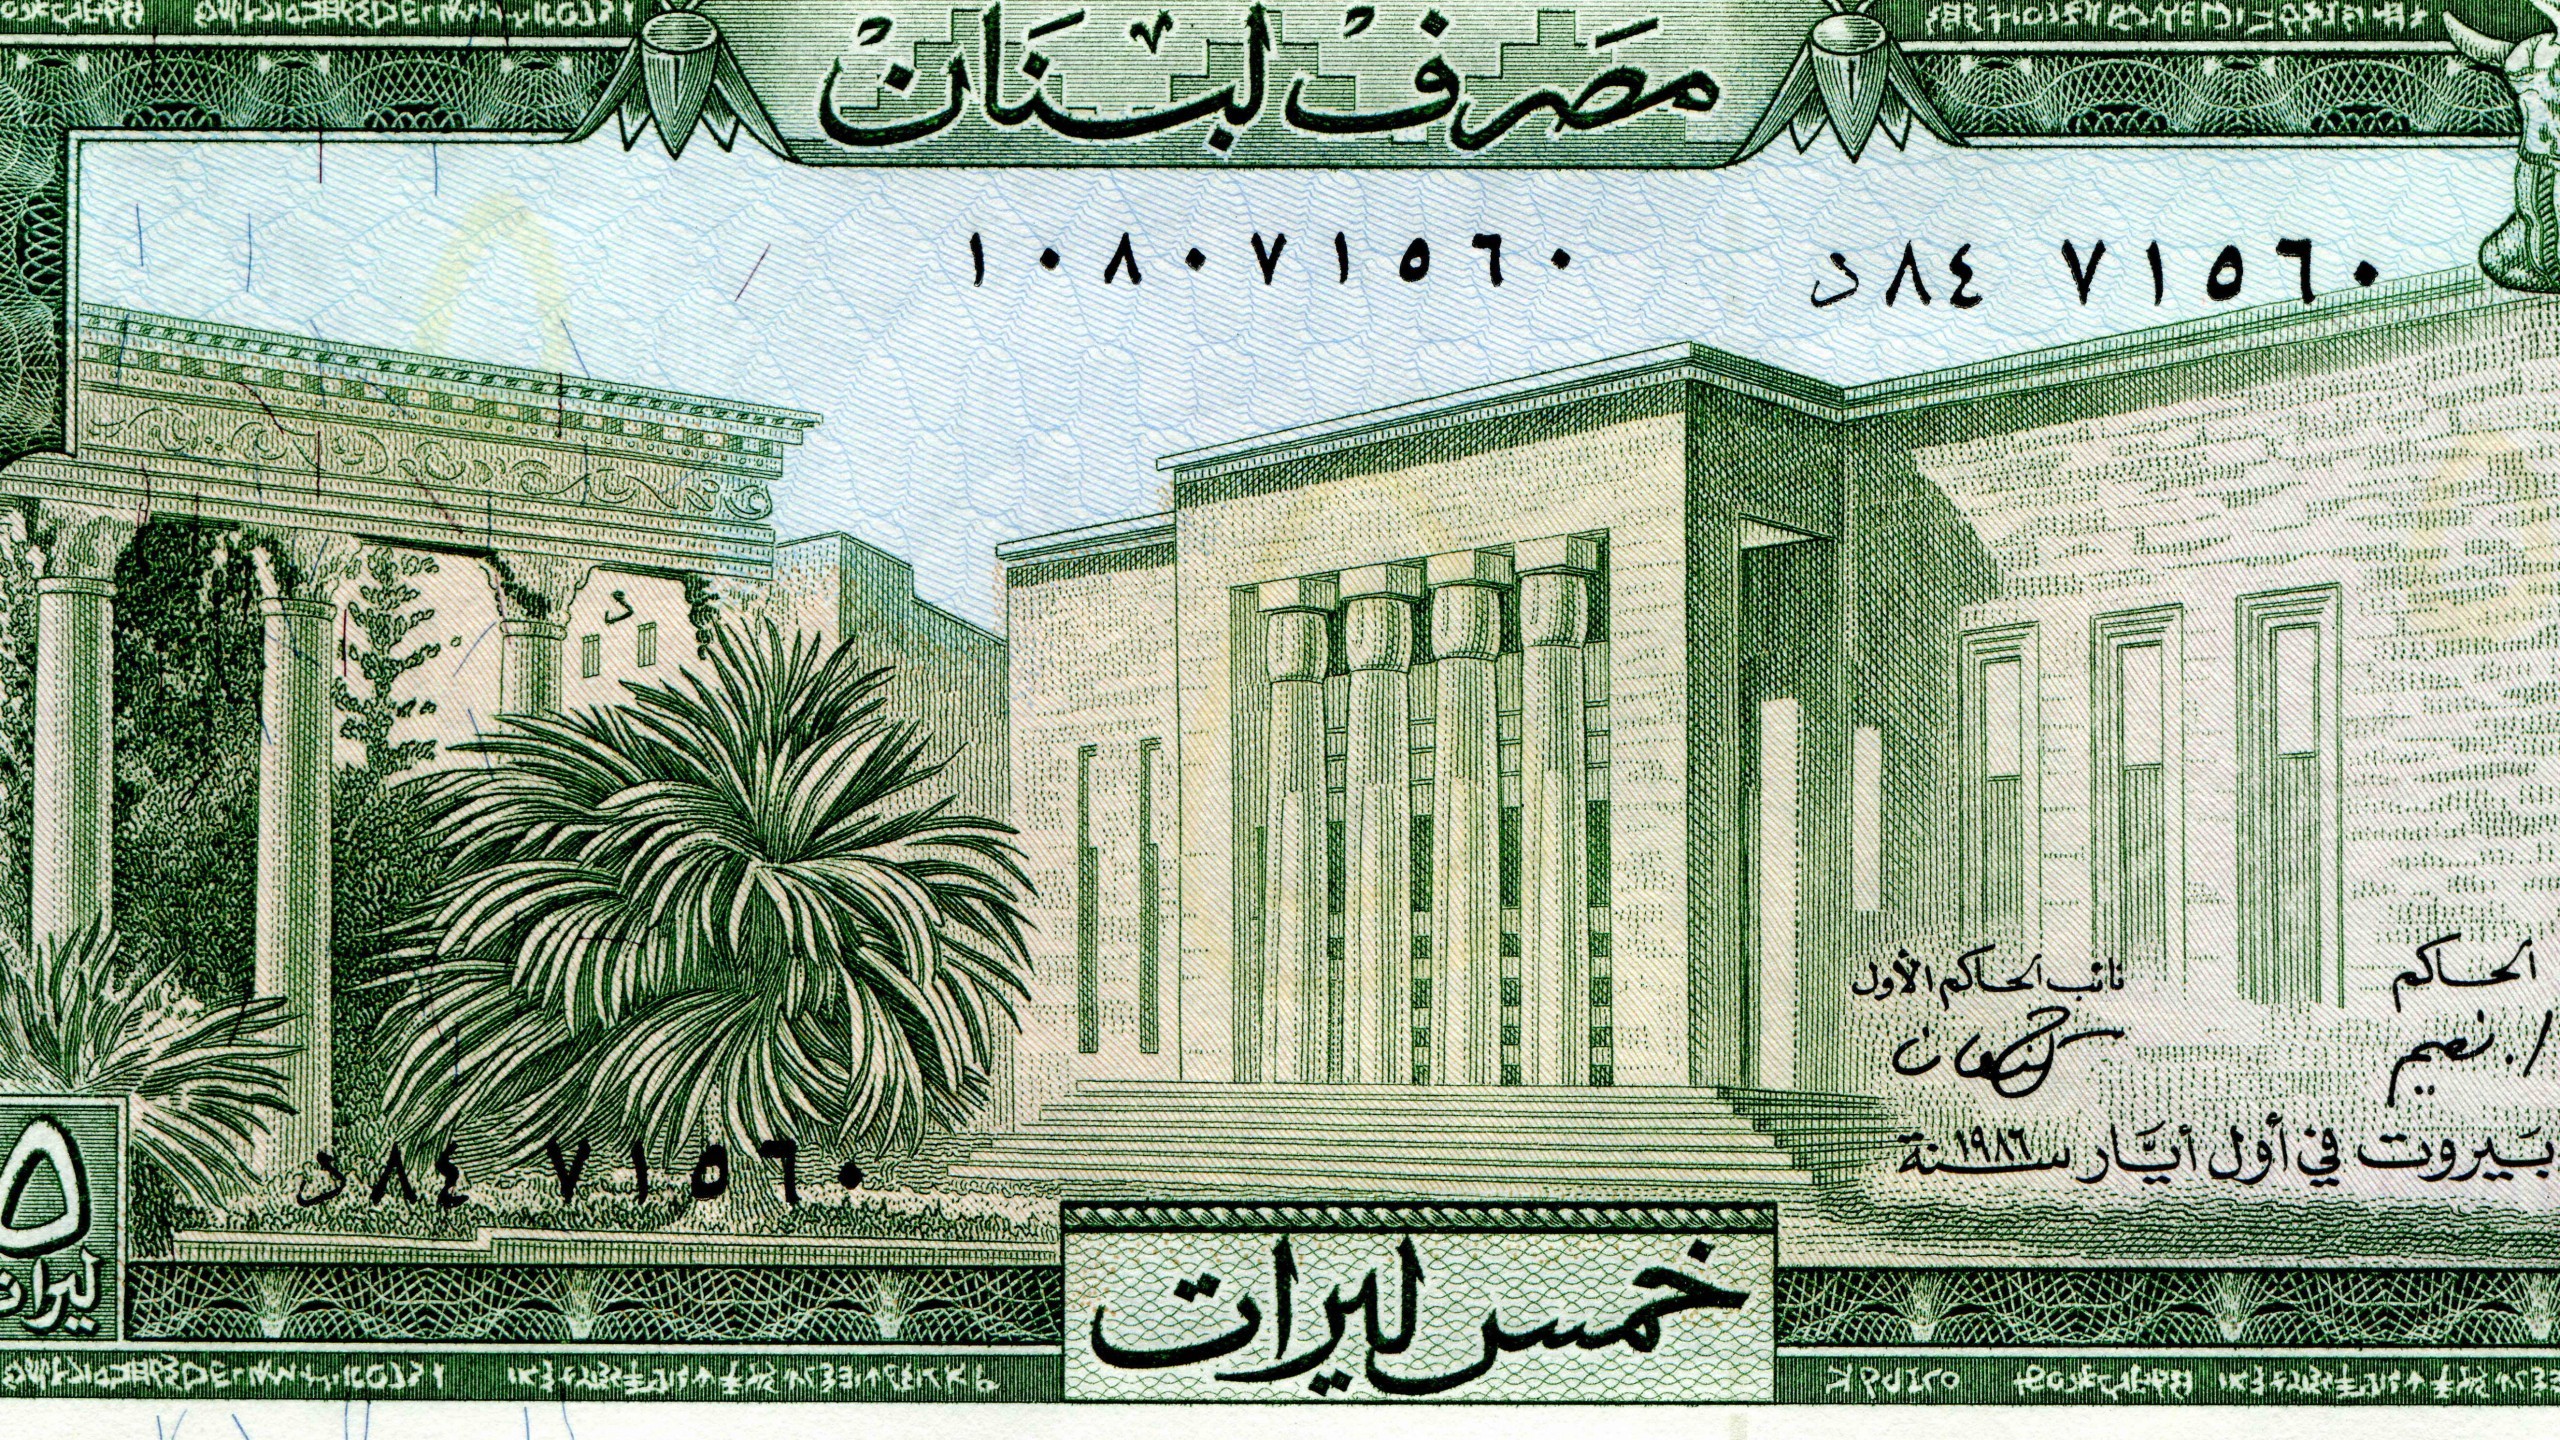 2560x1440, Download Banknotes, Money Wallpaper 
 Data - Lebanon 5 Lira Note - HD Wallpaper 